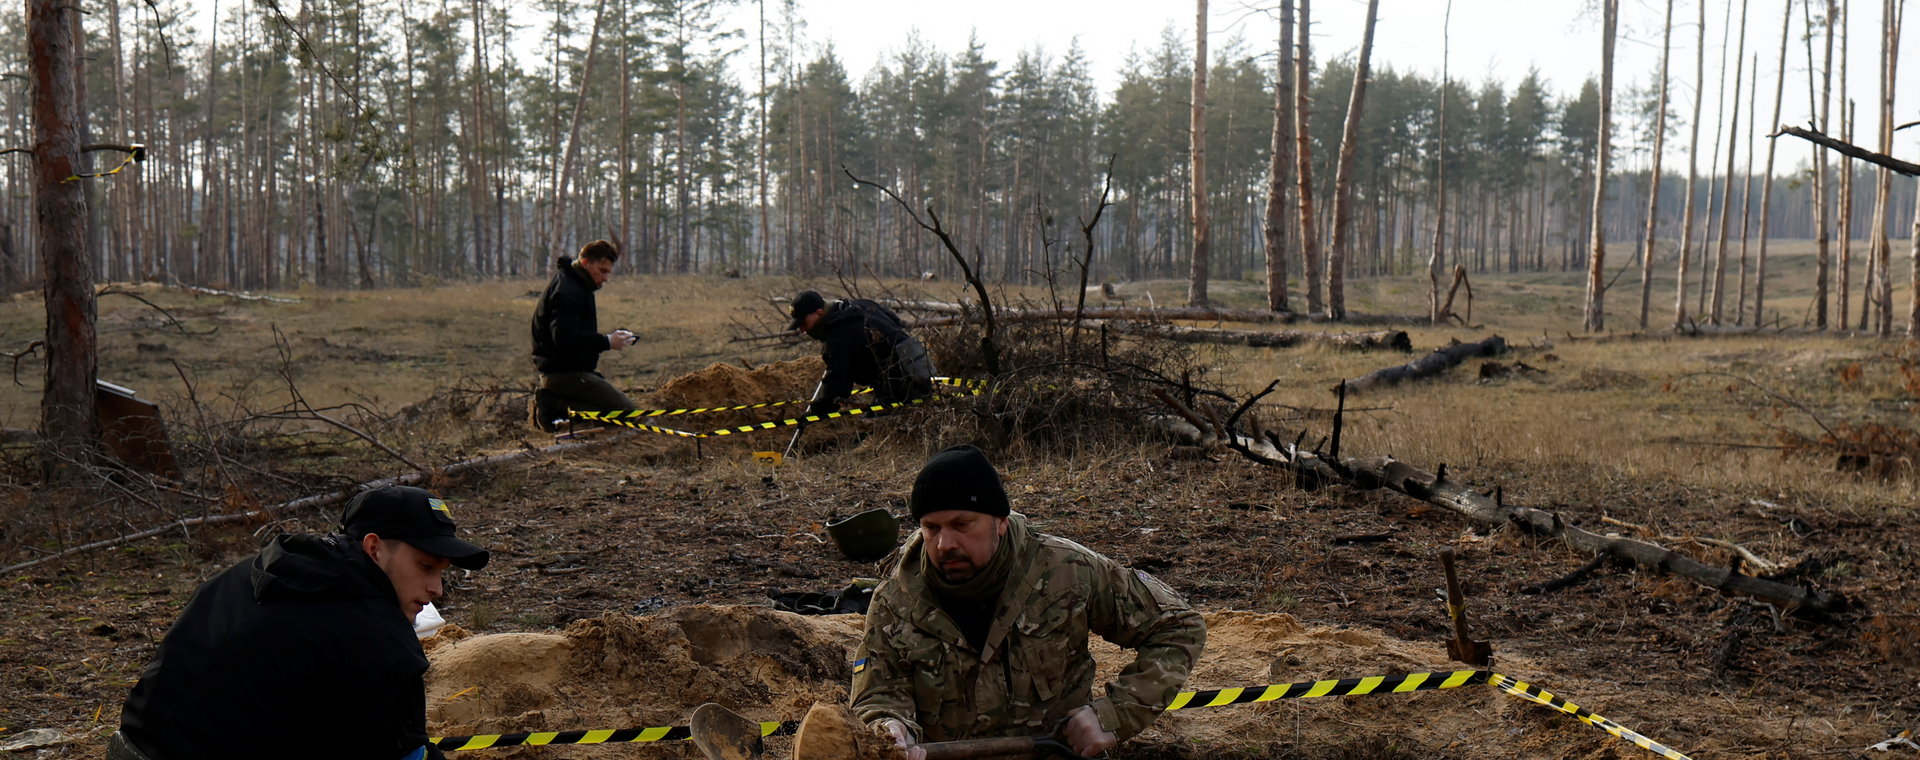 Czarny Tulipan dokonuje ekshumacji ciał z masowego grobu w Jampilu w Ukrainie, niedaleko Słowiańska.